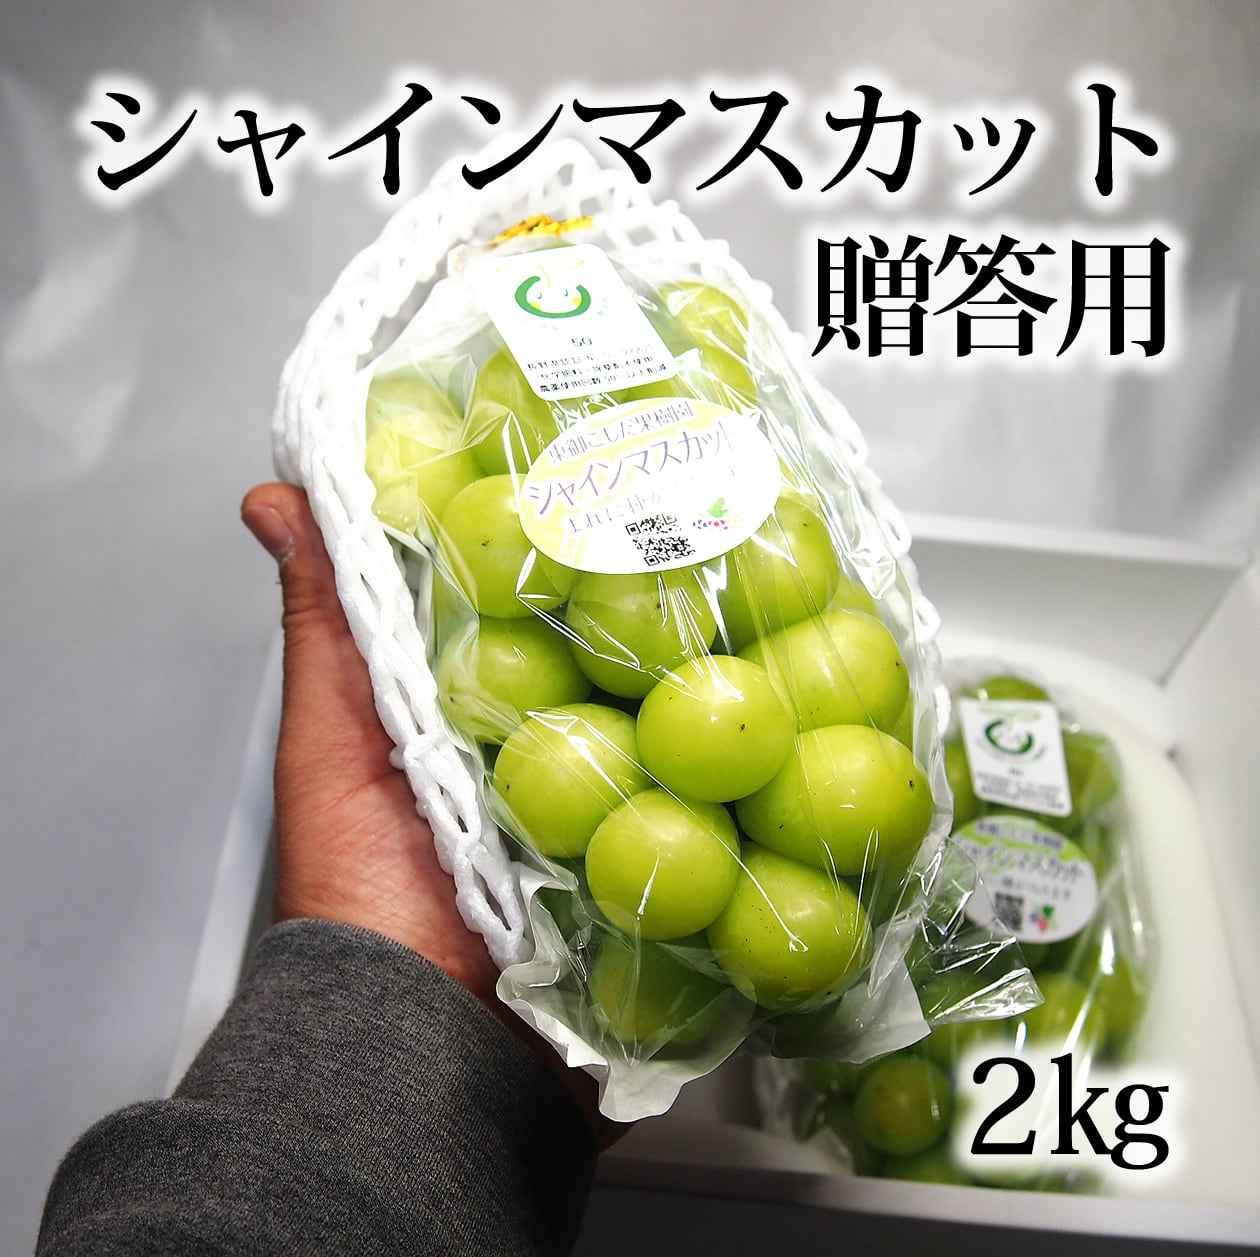 超歓迎された】 つぶつぶフルーツ4種類 送料込み640円